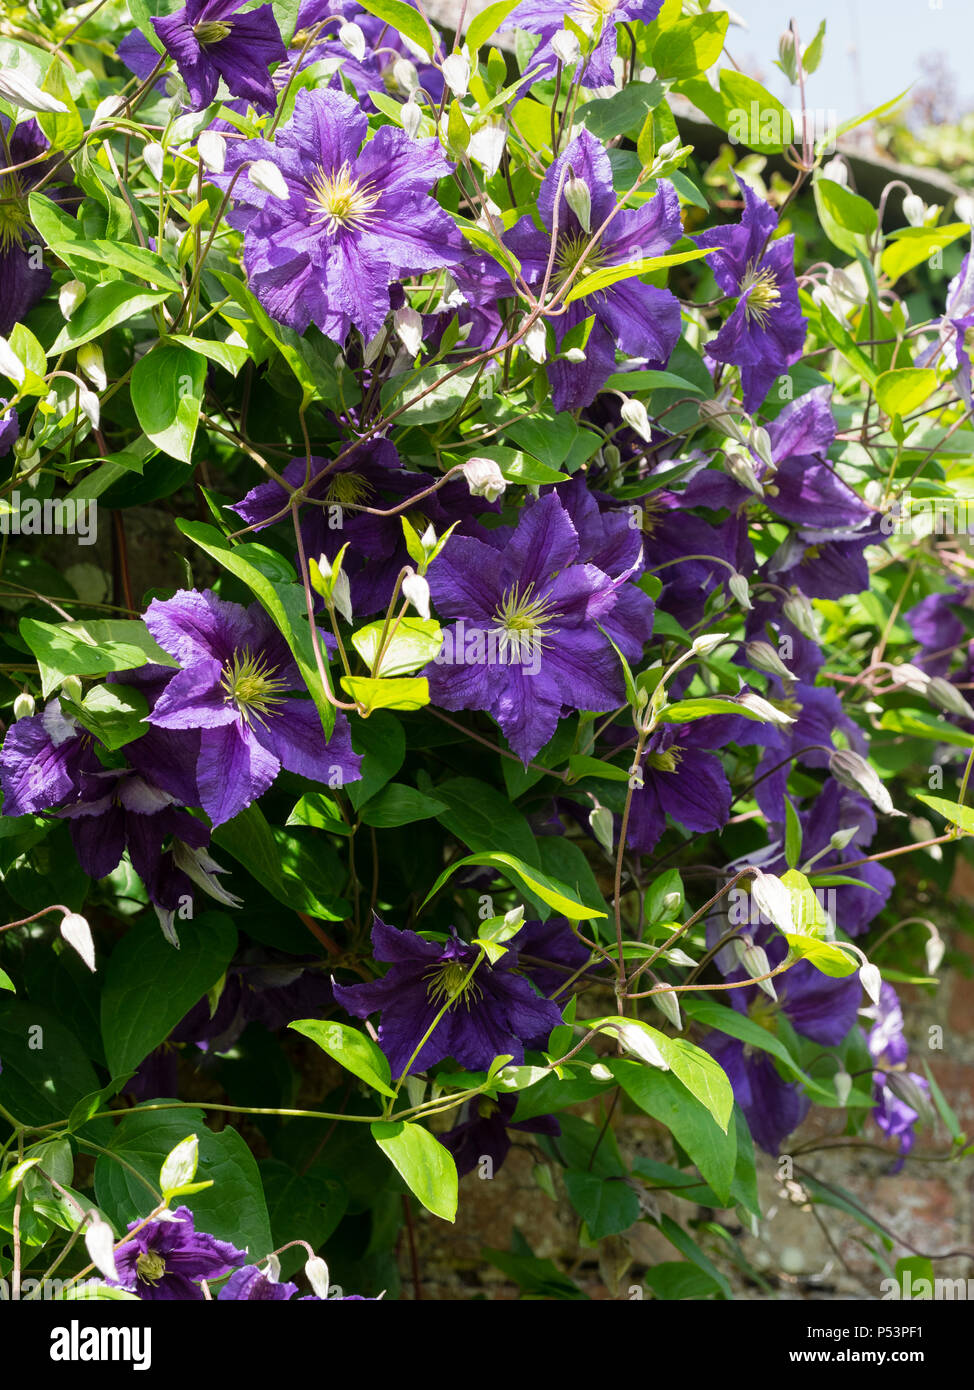 Singe fleurs d'été bleu-violet de l'alpiniste, Clematis viticella hardy 'Wisley' Banque D'Images